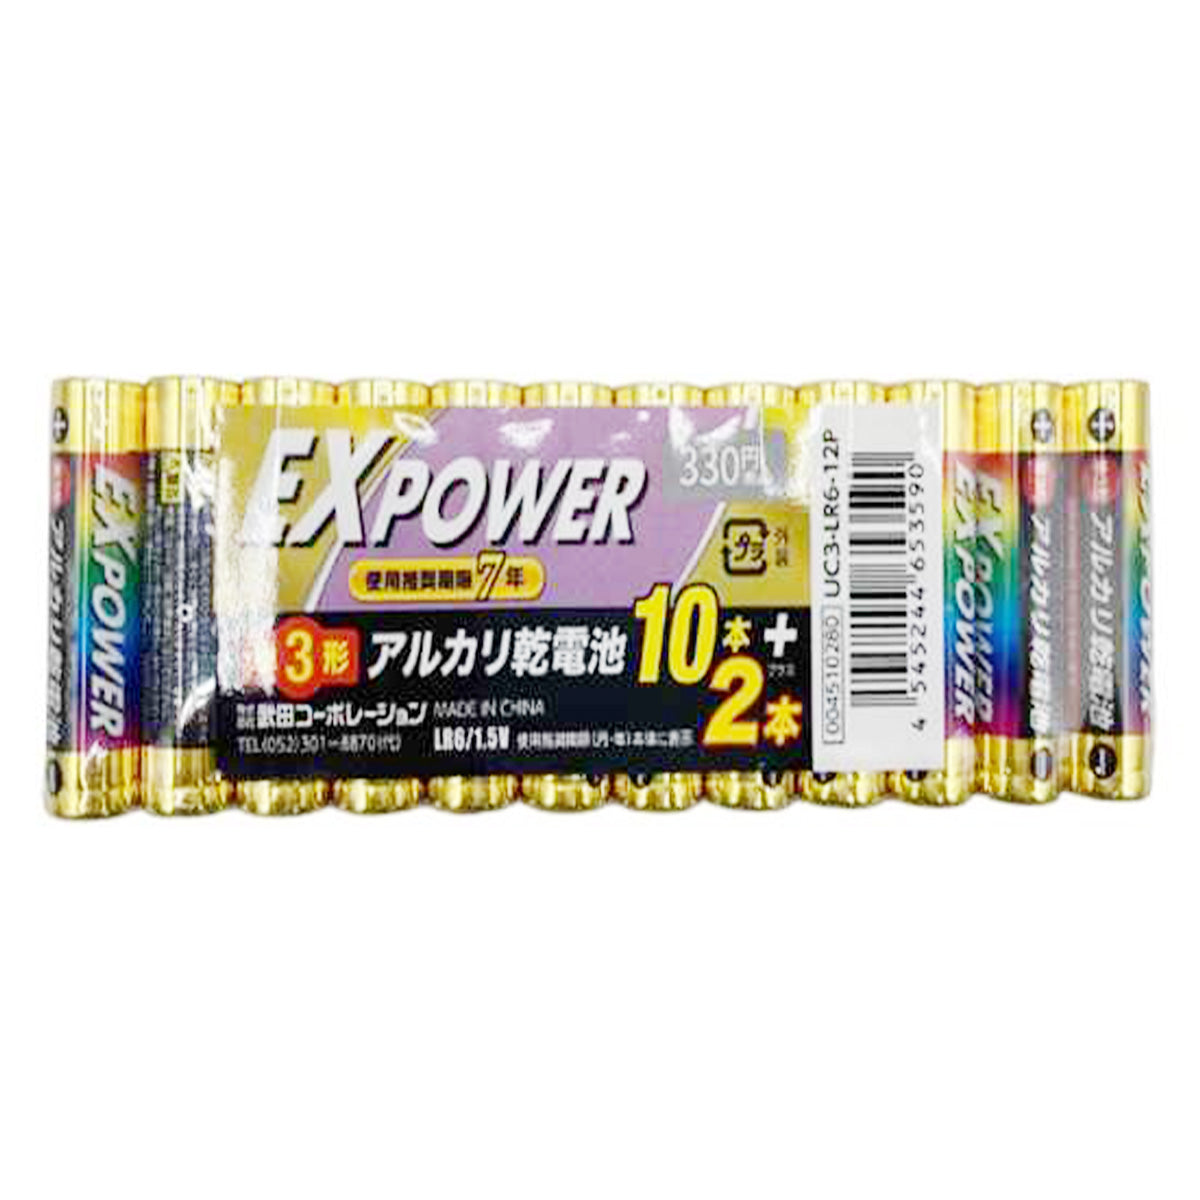 電池 単3形 武田コーポレーション アルカリ乾電池 EXPOWER  12本 9001/341587